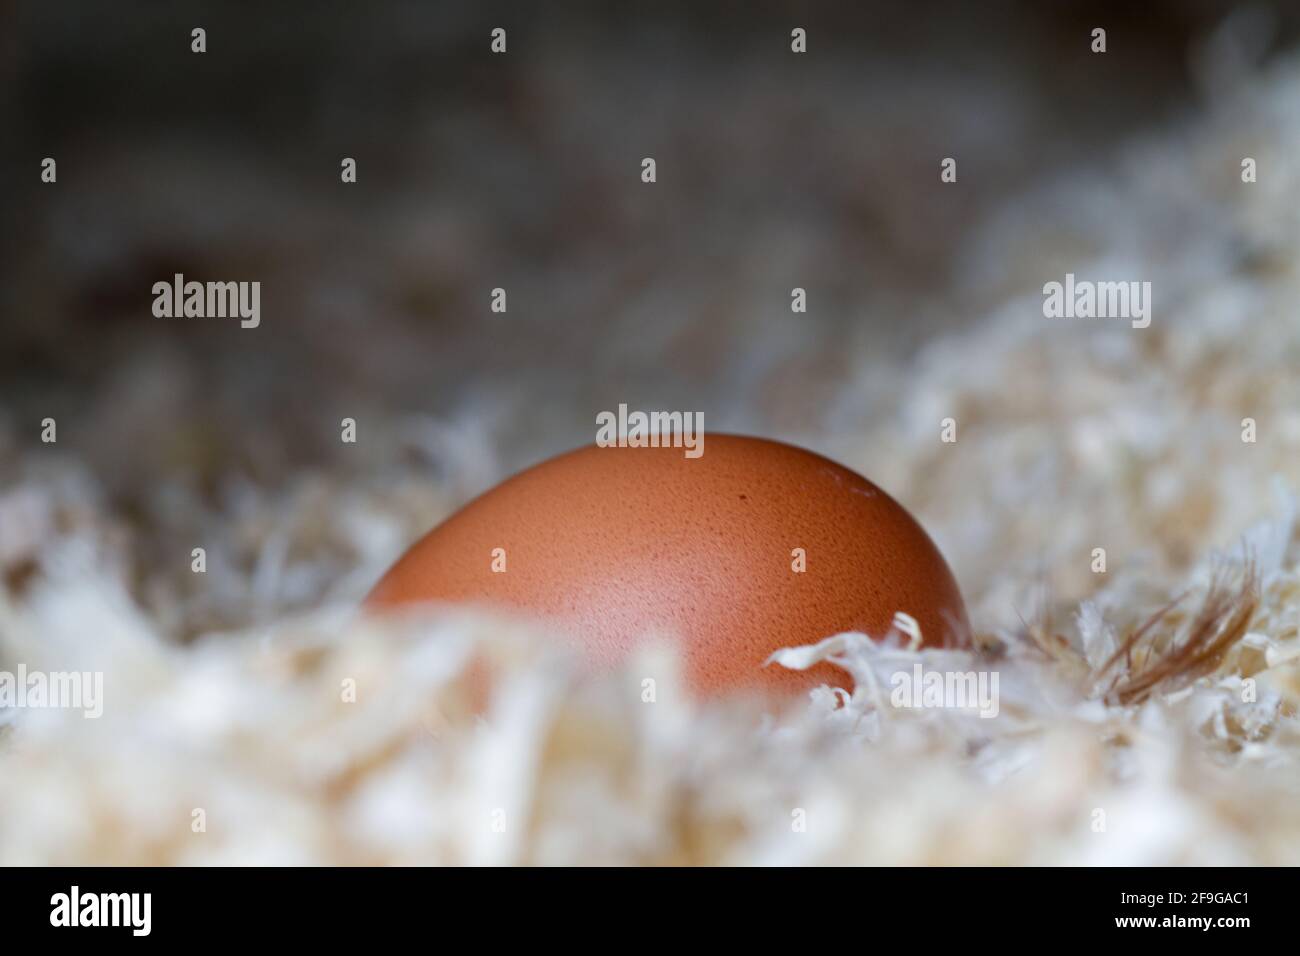 Un uovo marrone appena posato, affondato nella morbida segatura della polpetta di pollo Foto Stock